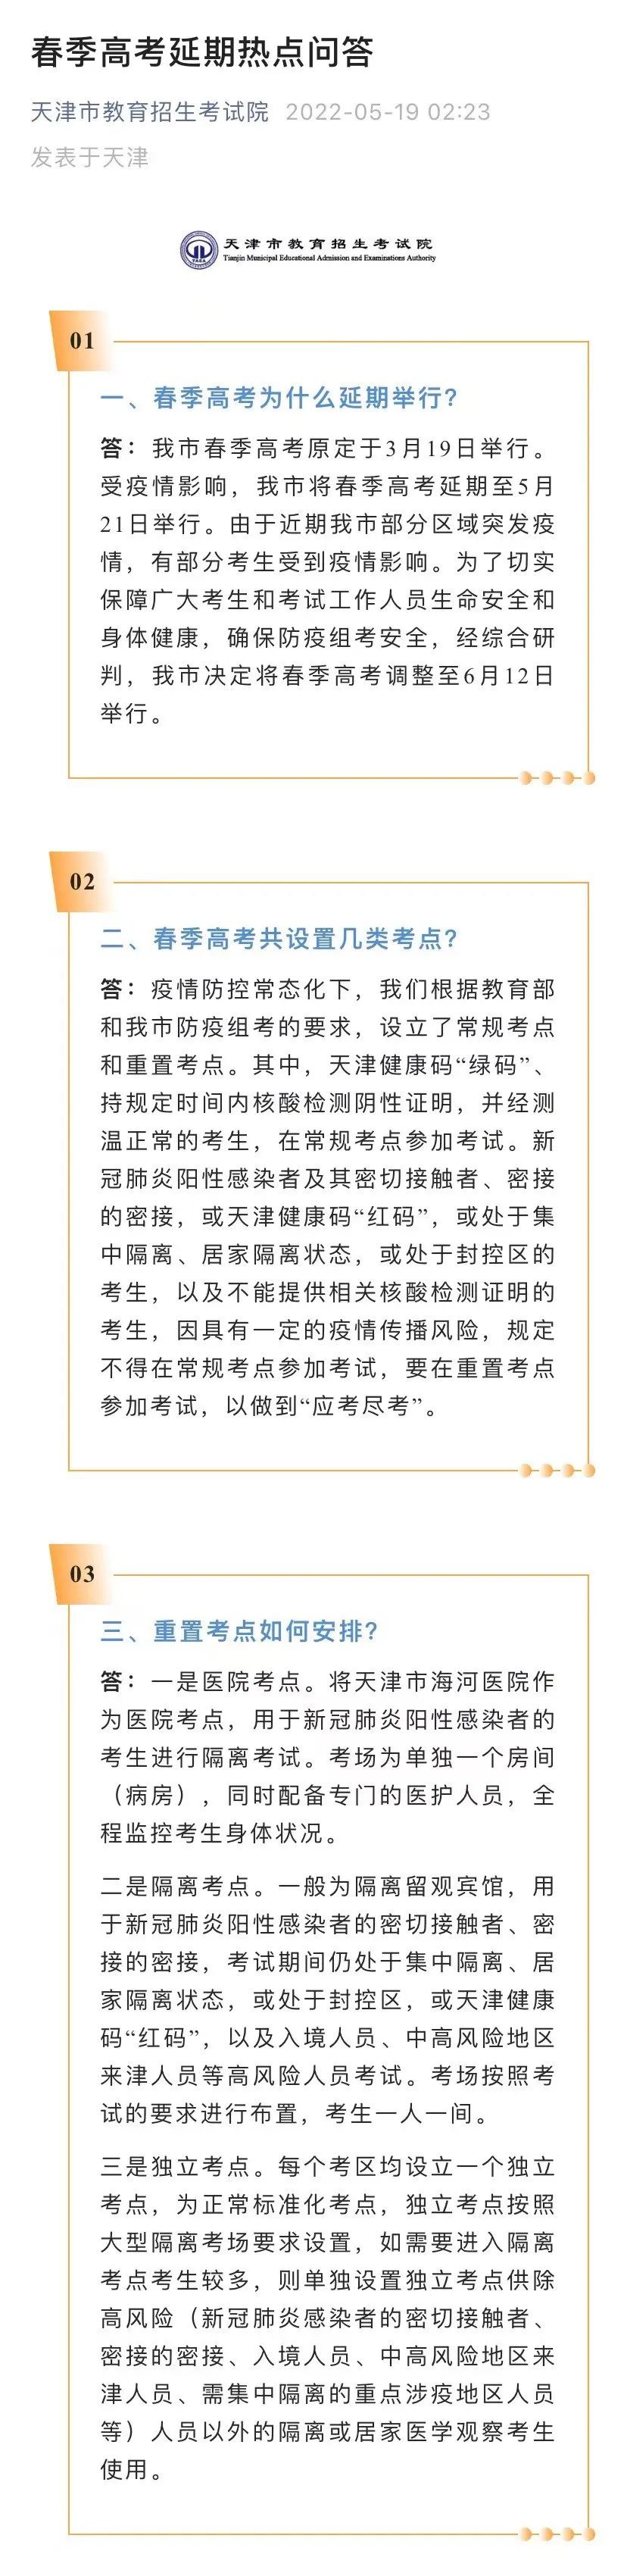 来源：中国新闻社、天津市教育招生考试院、央视新闻微博